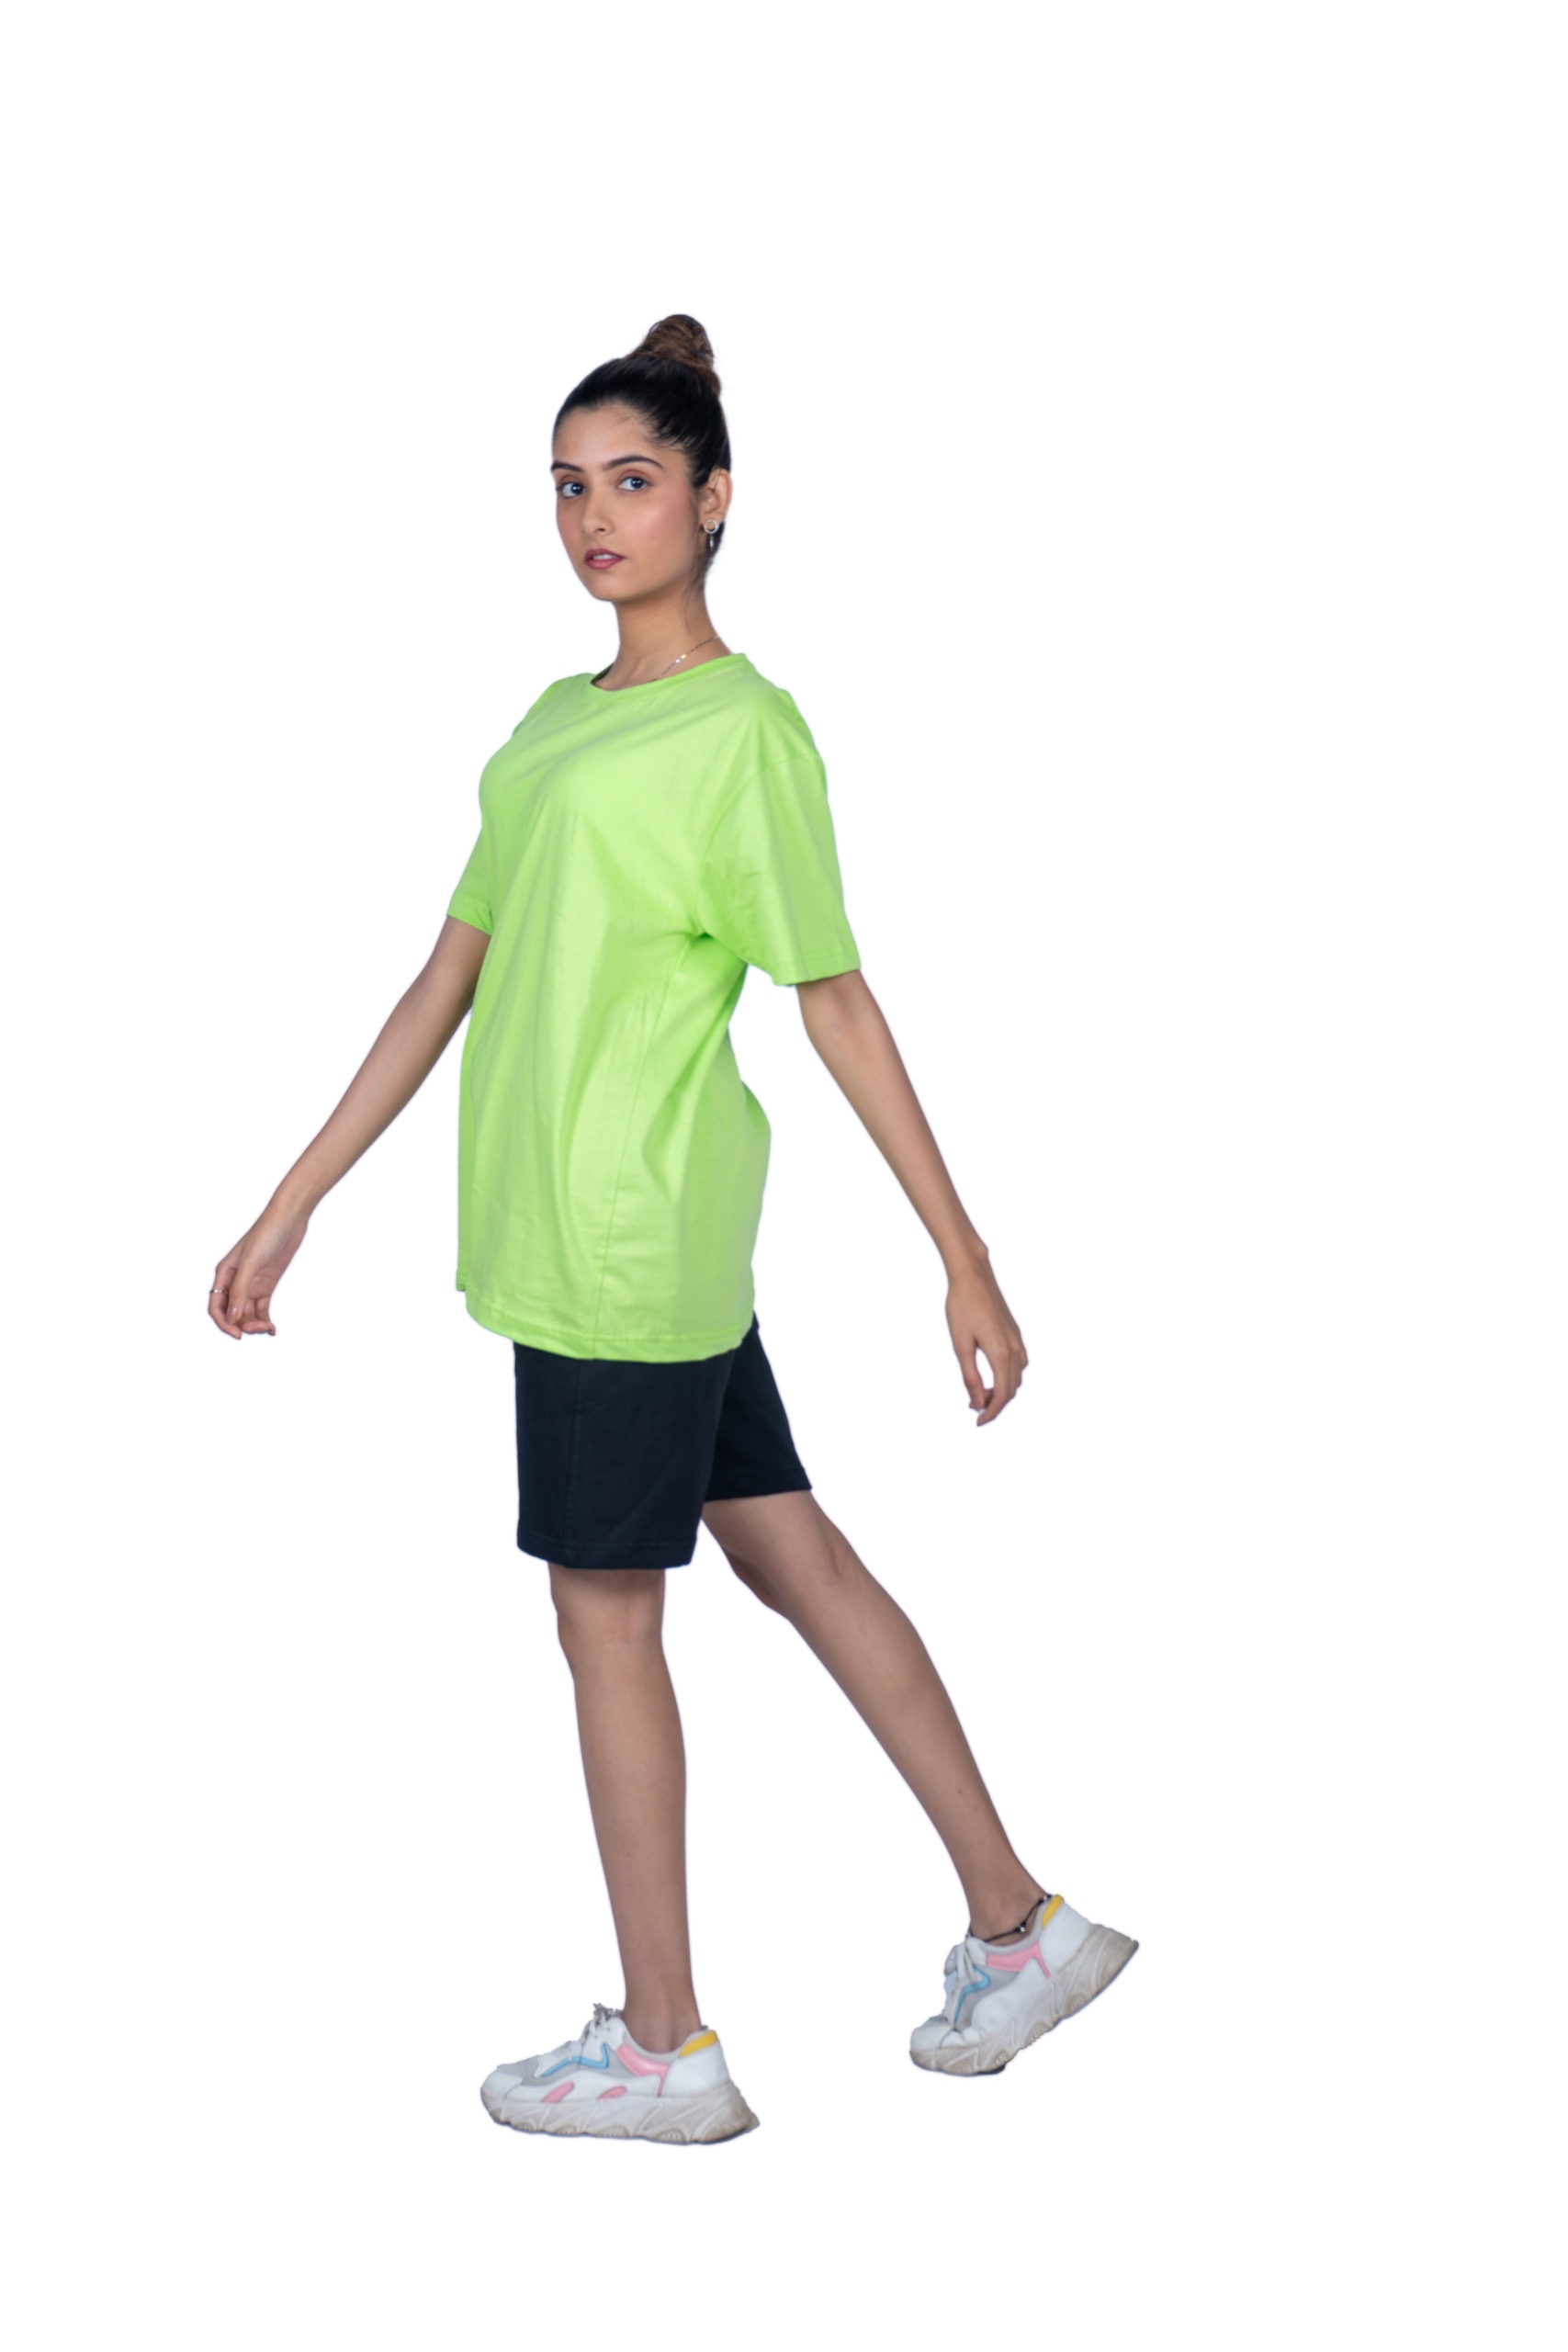 Apple Green Sun Plain Women's T-Shirt